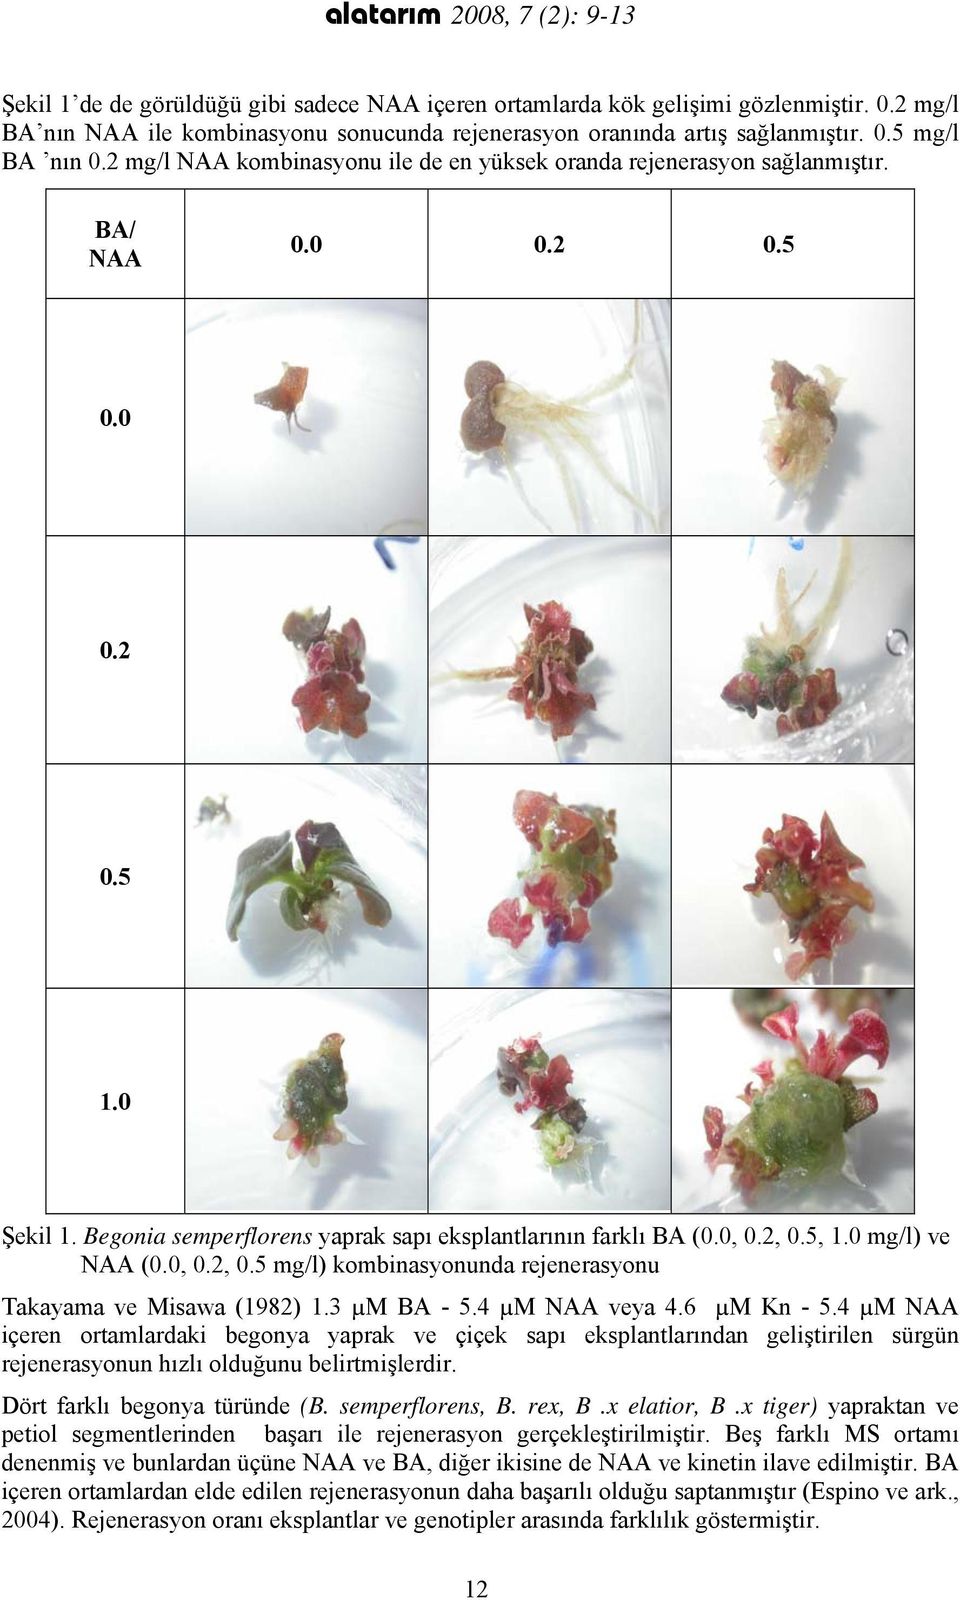 Begonia semperflorens yaprak sapı eksplantlarının farklı BA (0.0, 0.2, 0.5, 1.0 mg/l) ve NAA (0.0, 0.2, 0.5 mg/l) kombinasyonunda rejenerasyonu Takayama ve Misawa (1982) 1.3 µm BA - 5.4 µm NAA veya 4.